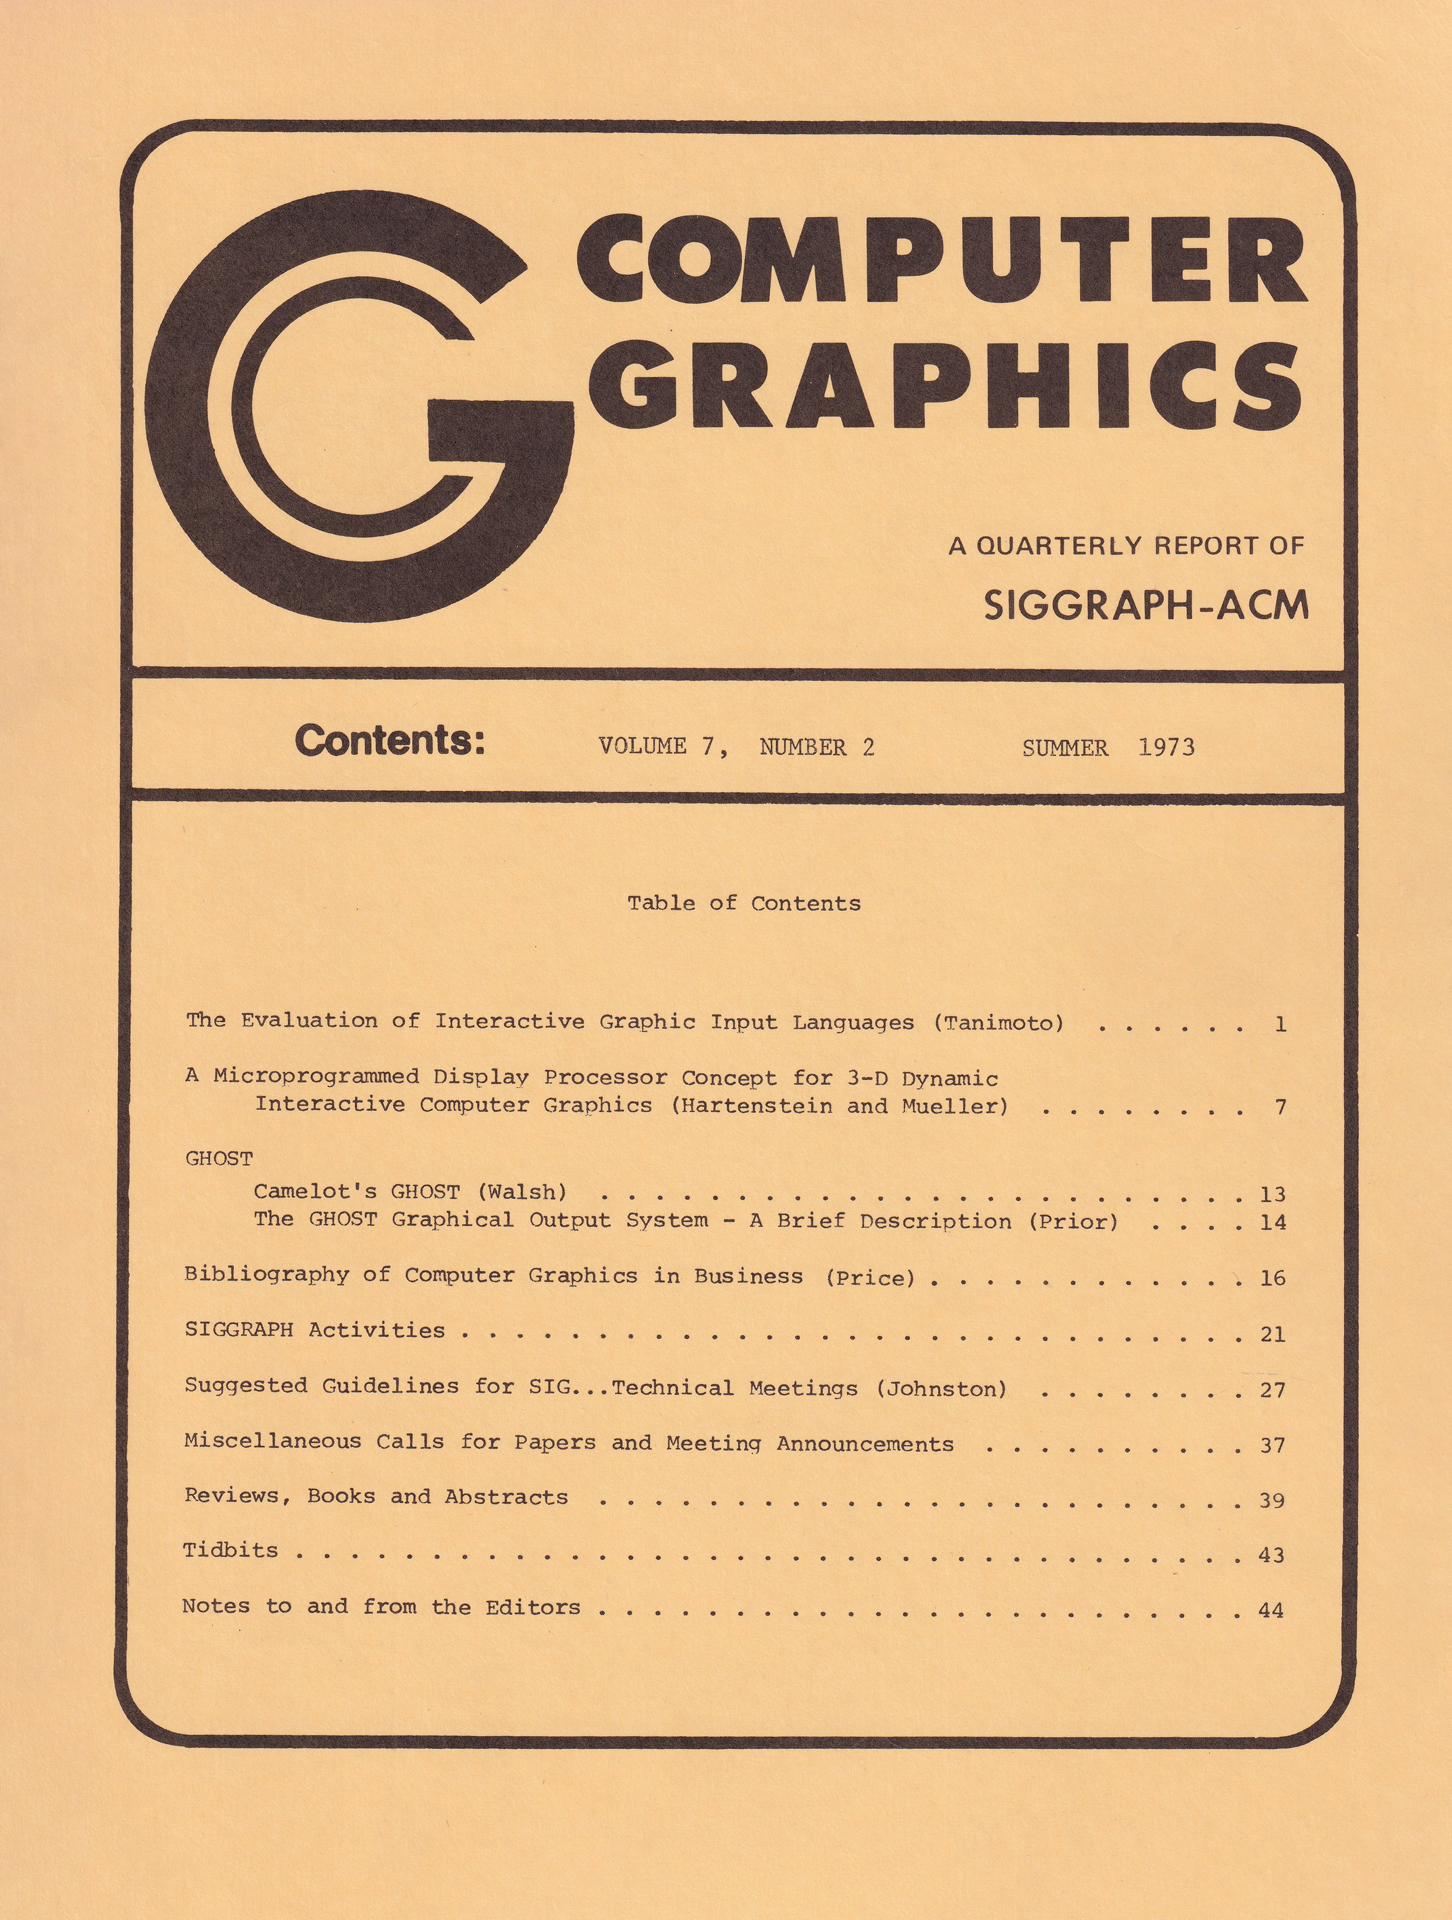 ©A Quarterly Report of SIGGRAPH-ACM